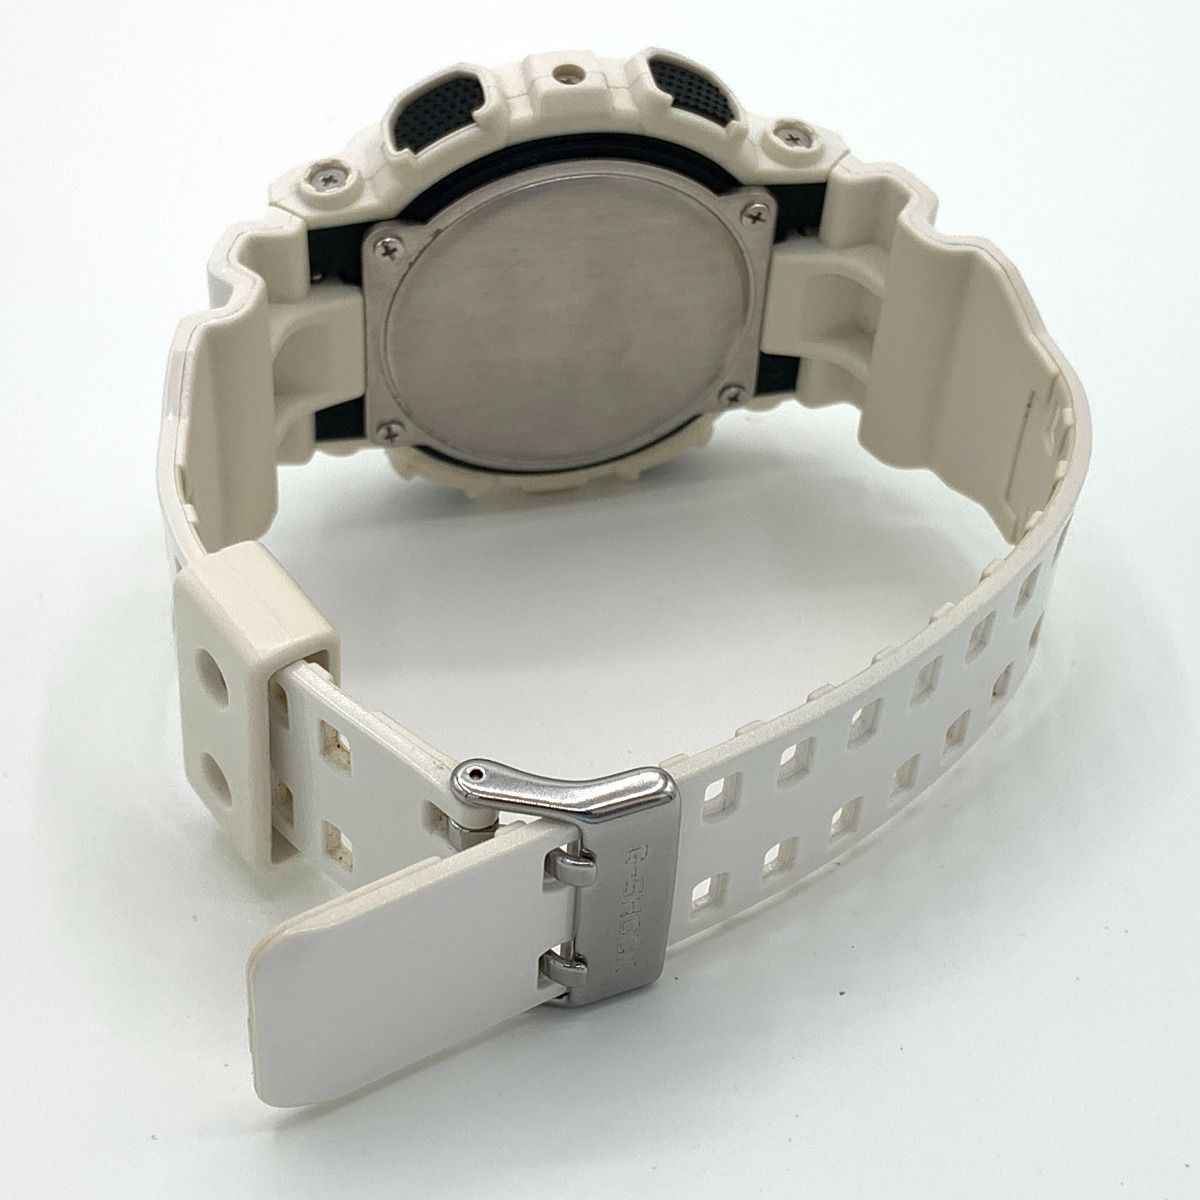 〇〇CASIO カシオ Gショック ホワイト＆ブラックシリーズ クォーツ 腕時計 GA-110GW-7AJF ホワイト